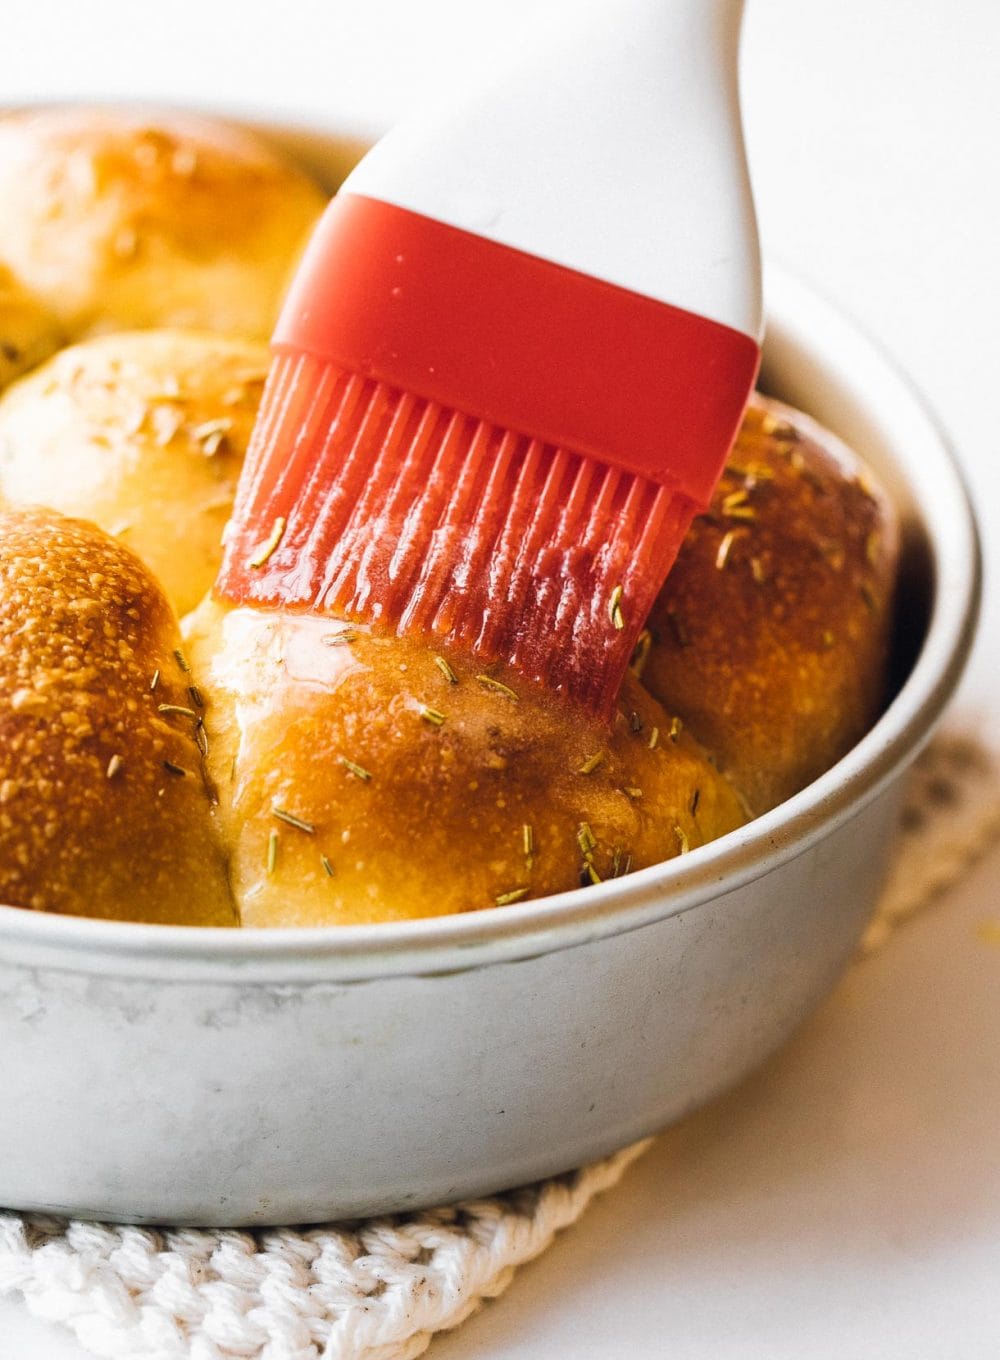 brushing butter on sourdough dinner rolls